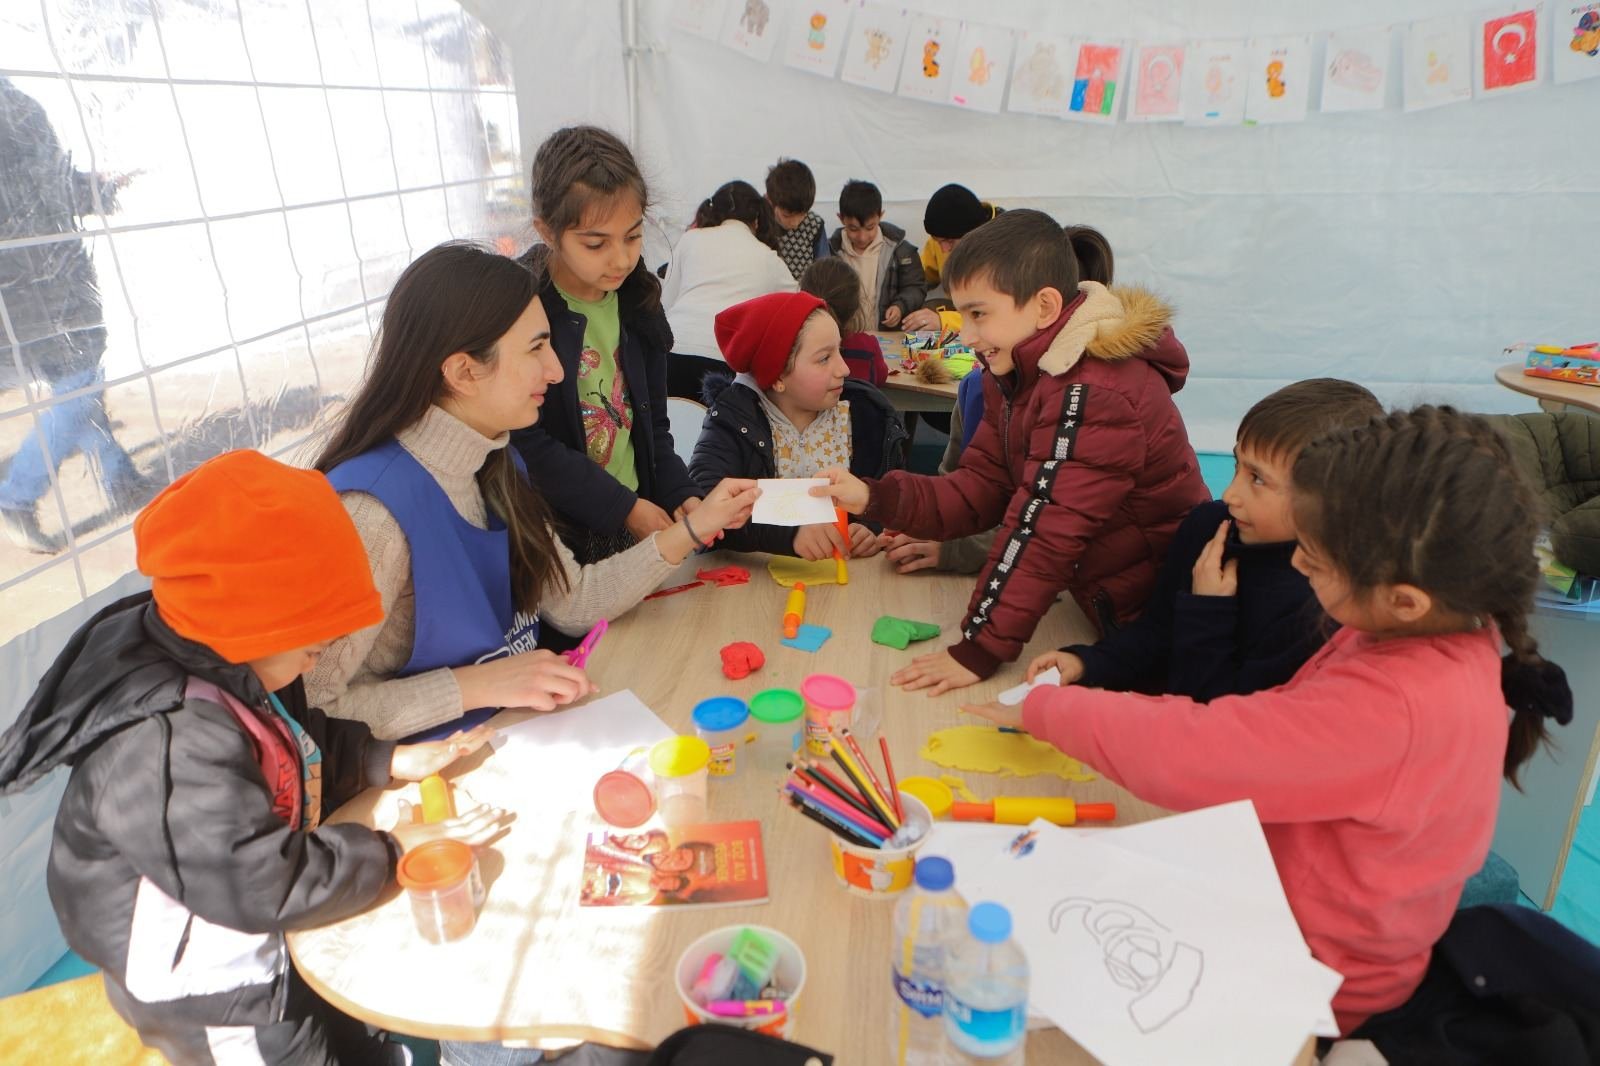 Азербайджанские волонтеры продолжают свою гуманитарную миссию в Турции